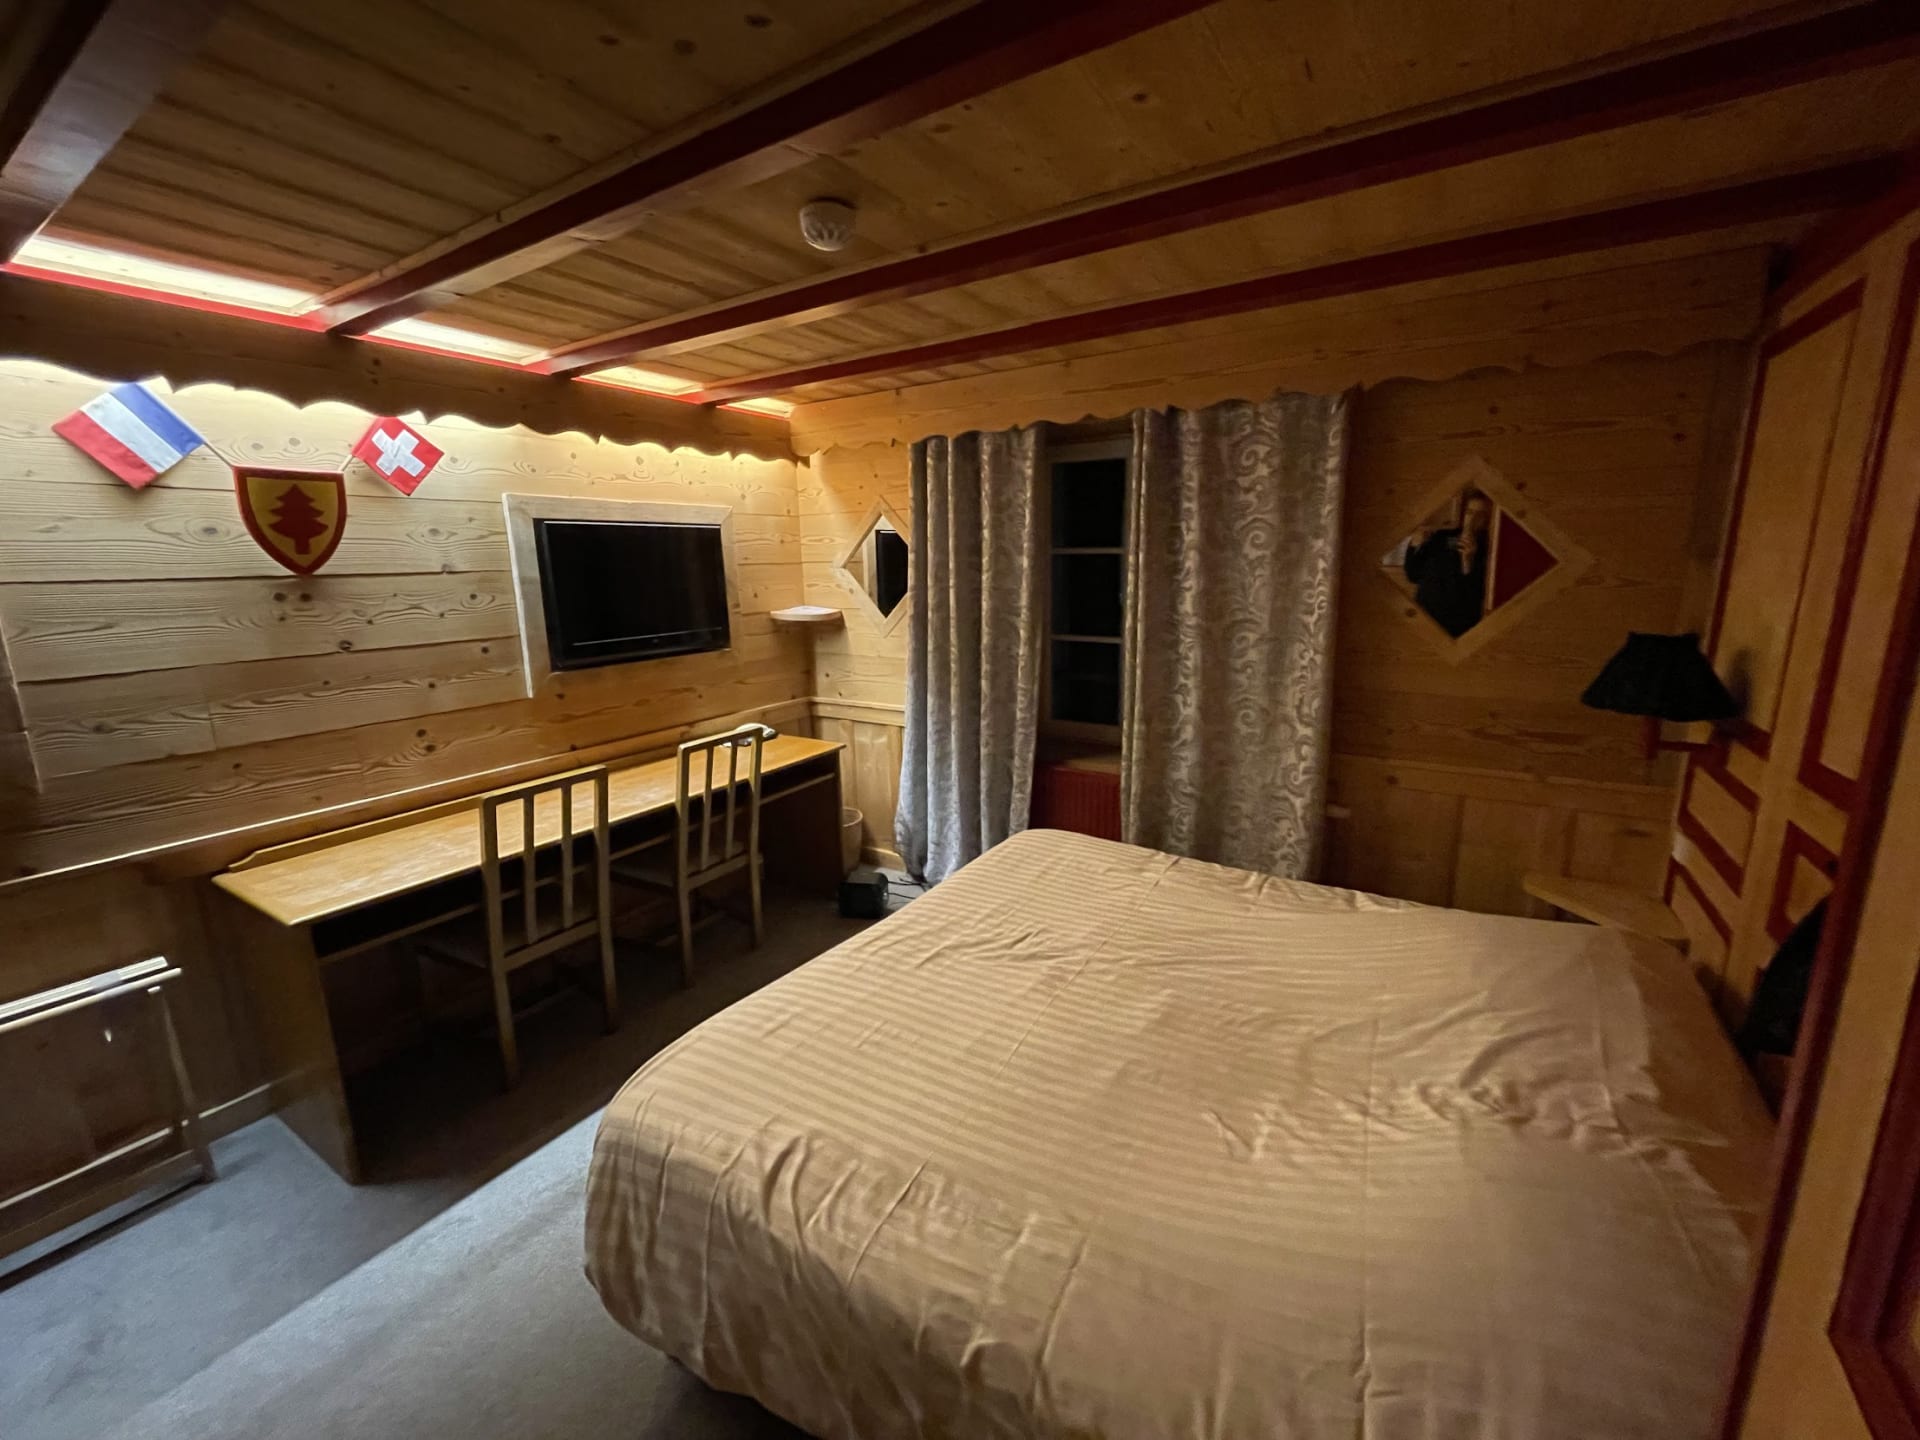 U slaapt met uw hoofd in Zwitserland en uw voeten in Frankrijk.. Dit unieke hotel overspant twee landen